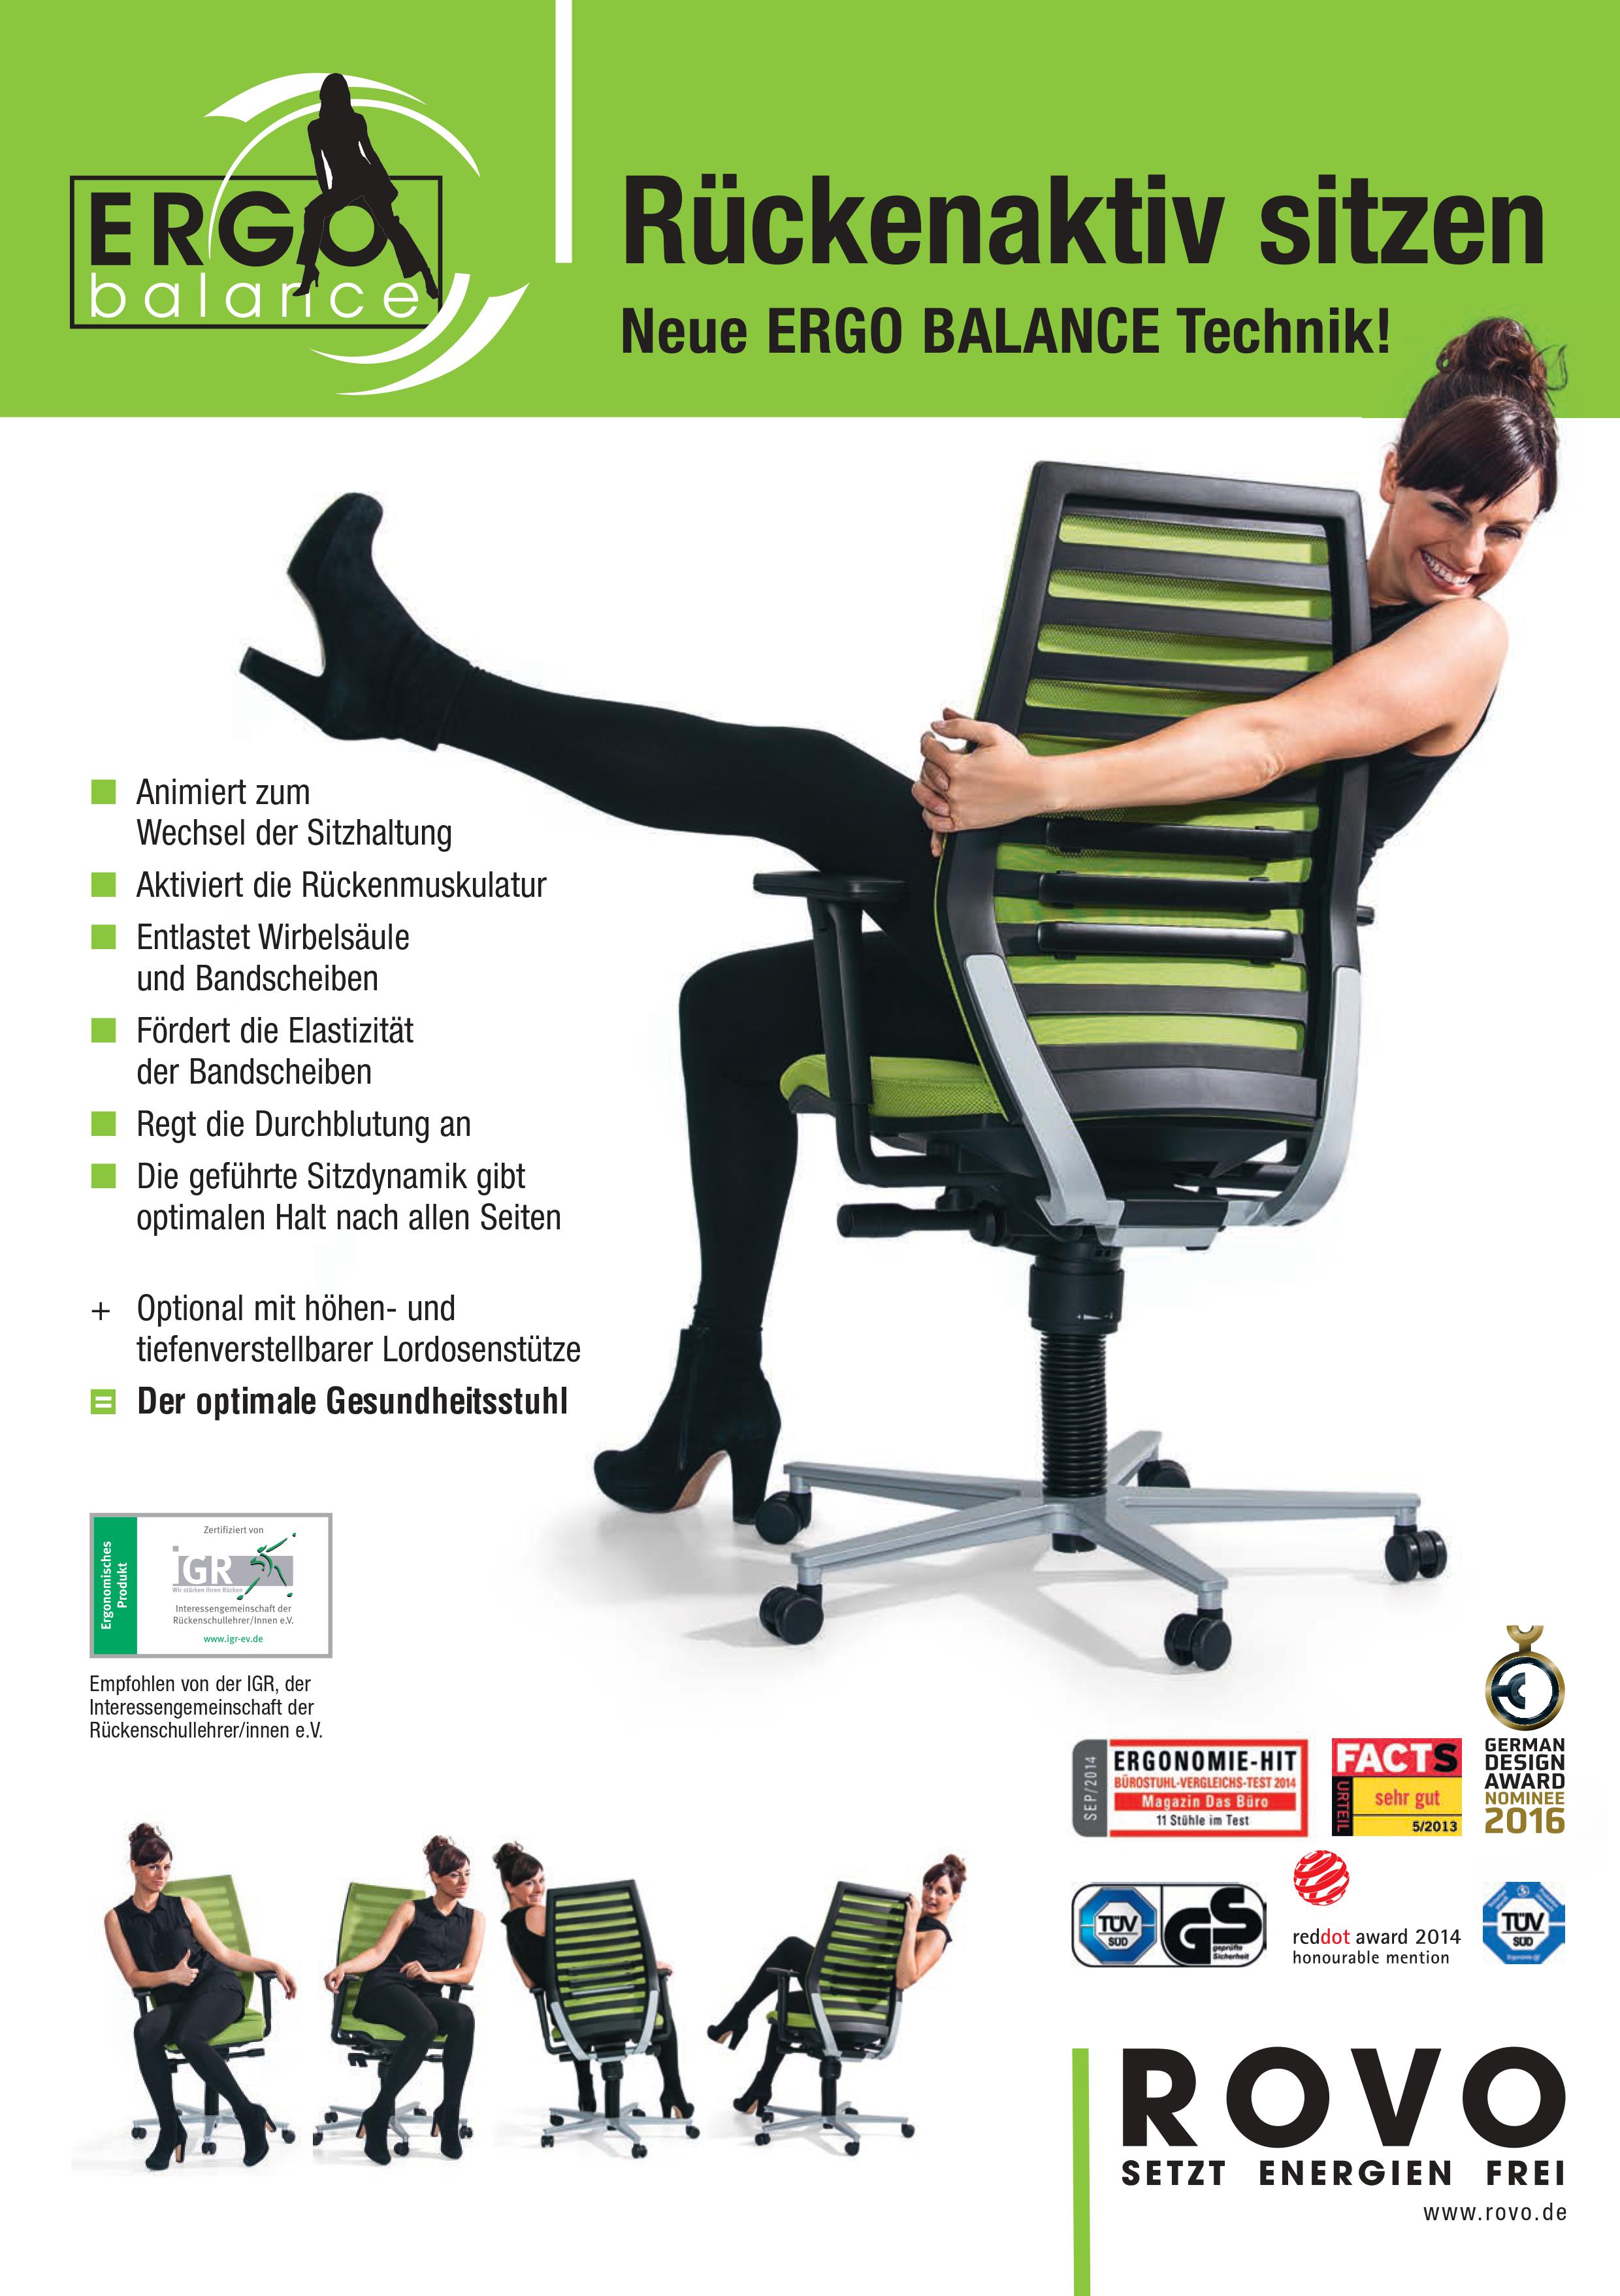 Rovo Chair mit Ergo Balance Plus